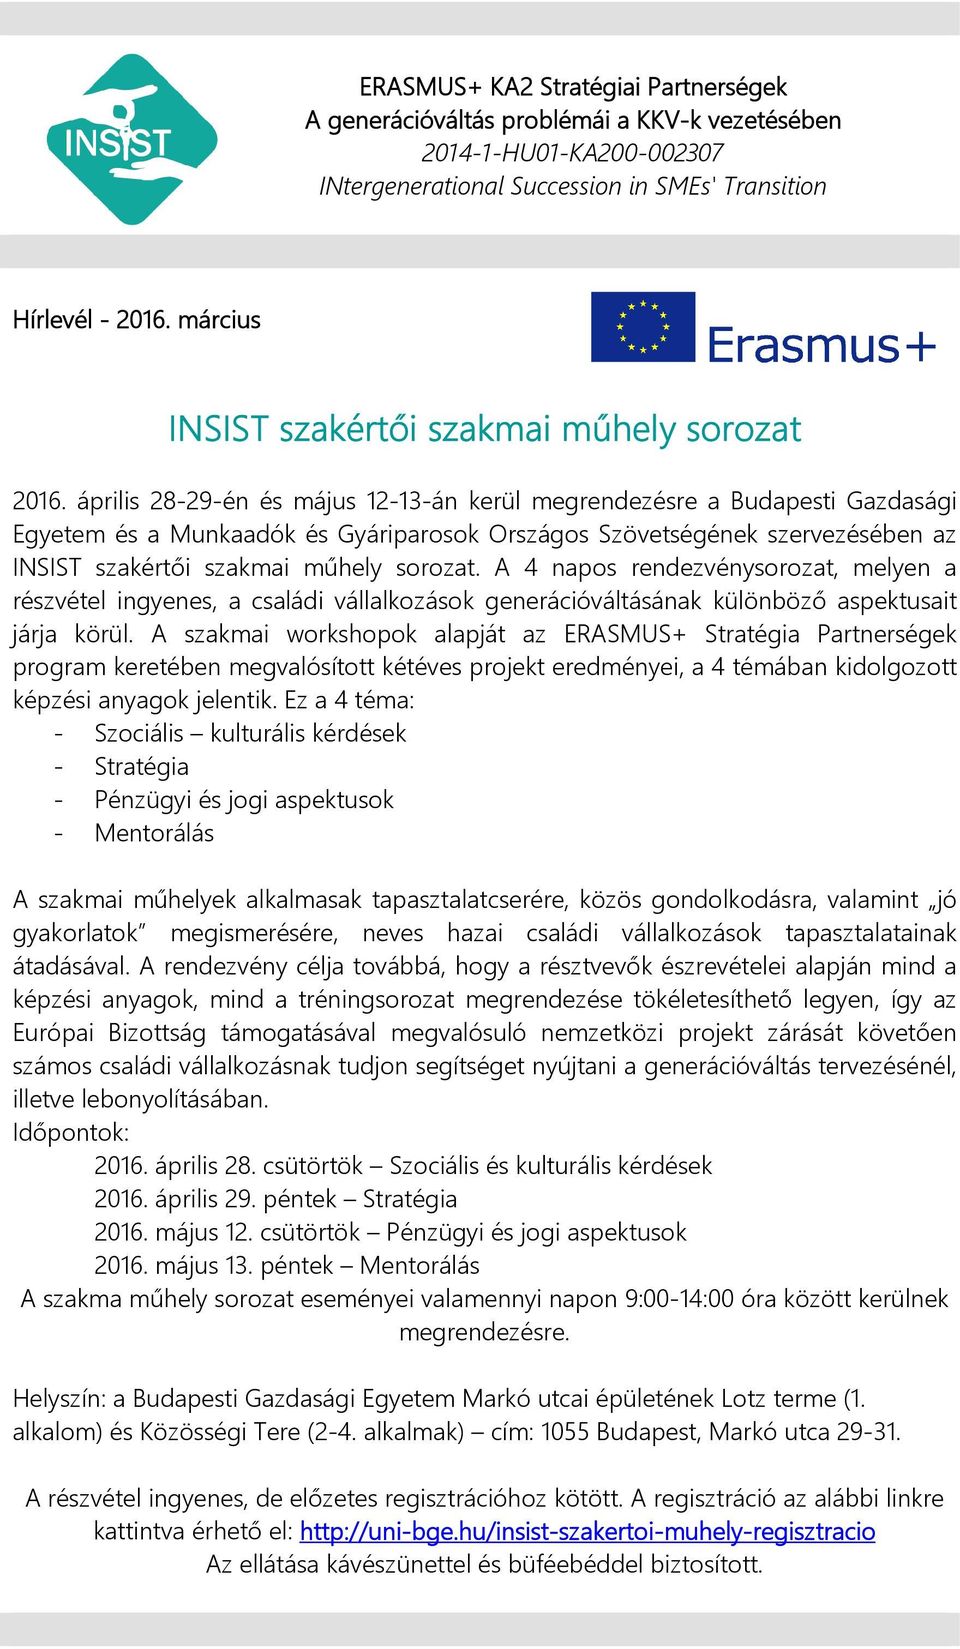 április 28-29-én és május 12-13-án kerül megrendezésre a Budapesti Gazdasági Egyetem és a Munkaadók és Gyáriparosok Országos Szövetségének szervezésében az INSIST szakértői szakmai műhely sorozat.